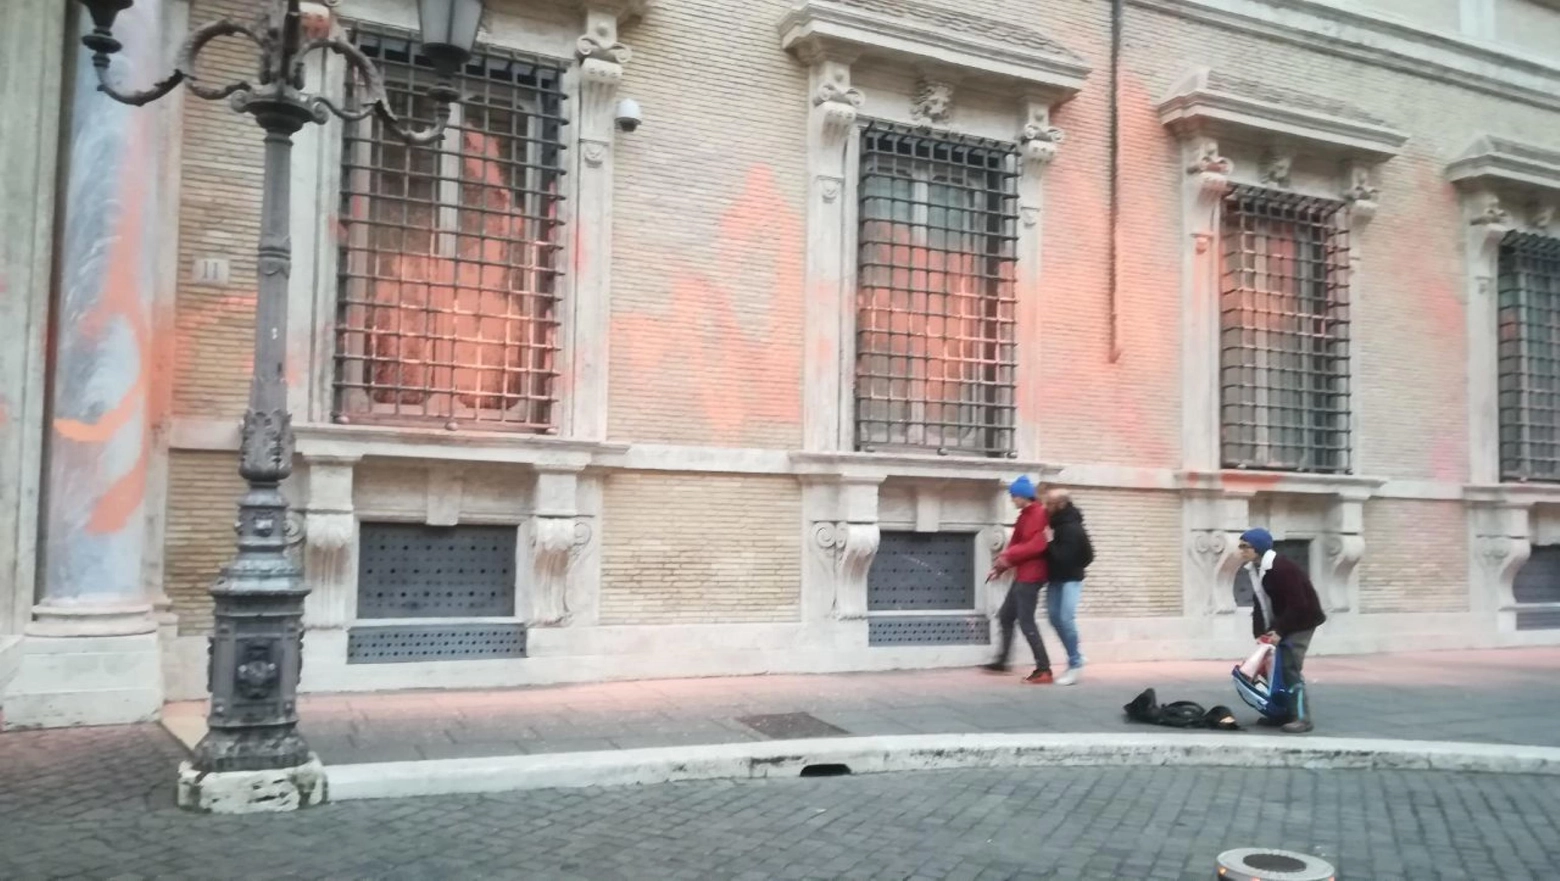 Il blitz degli ambientalisti di Ultima Generazione che hanno lanciato vernice sulla facciata del Senato, Roma, 2 gennaio 2023.
ANSA / UFFICIO STAMPA ULTIMA GENERAZIONE +++EDITORIAL USE ONLY - NO SALES+++